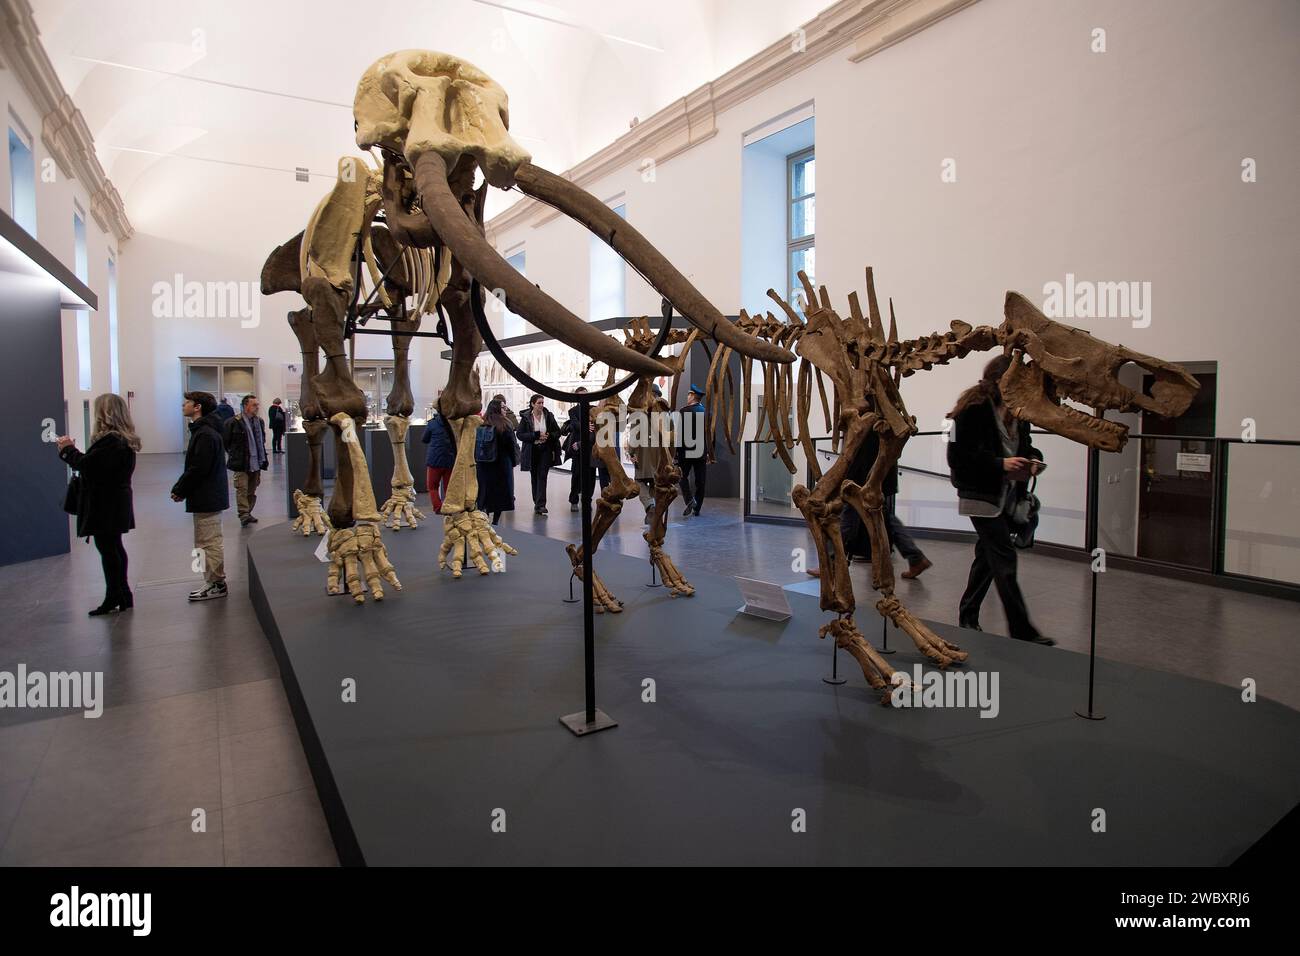 Italien Piemont Turin Regionalmuseum für Naturwissenschaften - Mastodon und Rinoceros Harz Modelle von Skeletten - aus Funden der Originale in der Provinz Asti Credit: Realy Easy Star/Alamy Live News Stockfoto